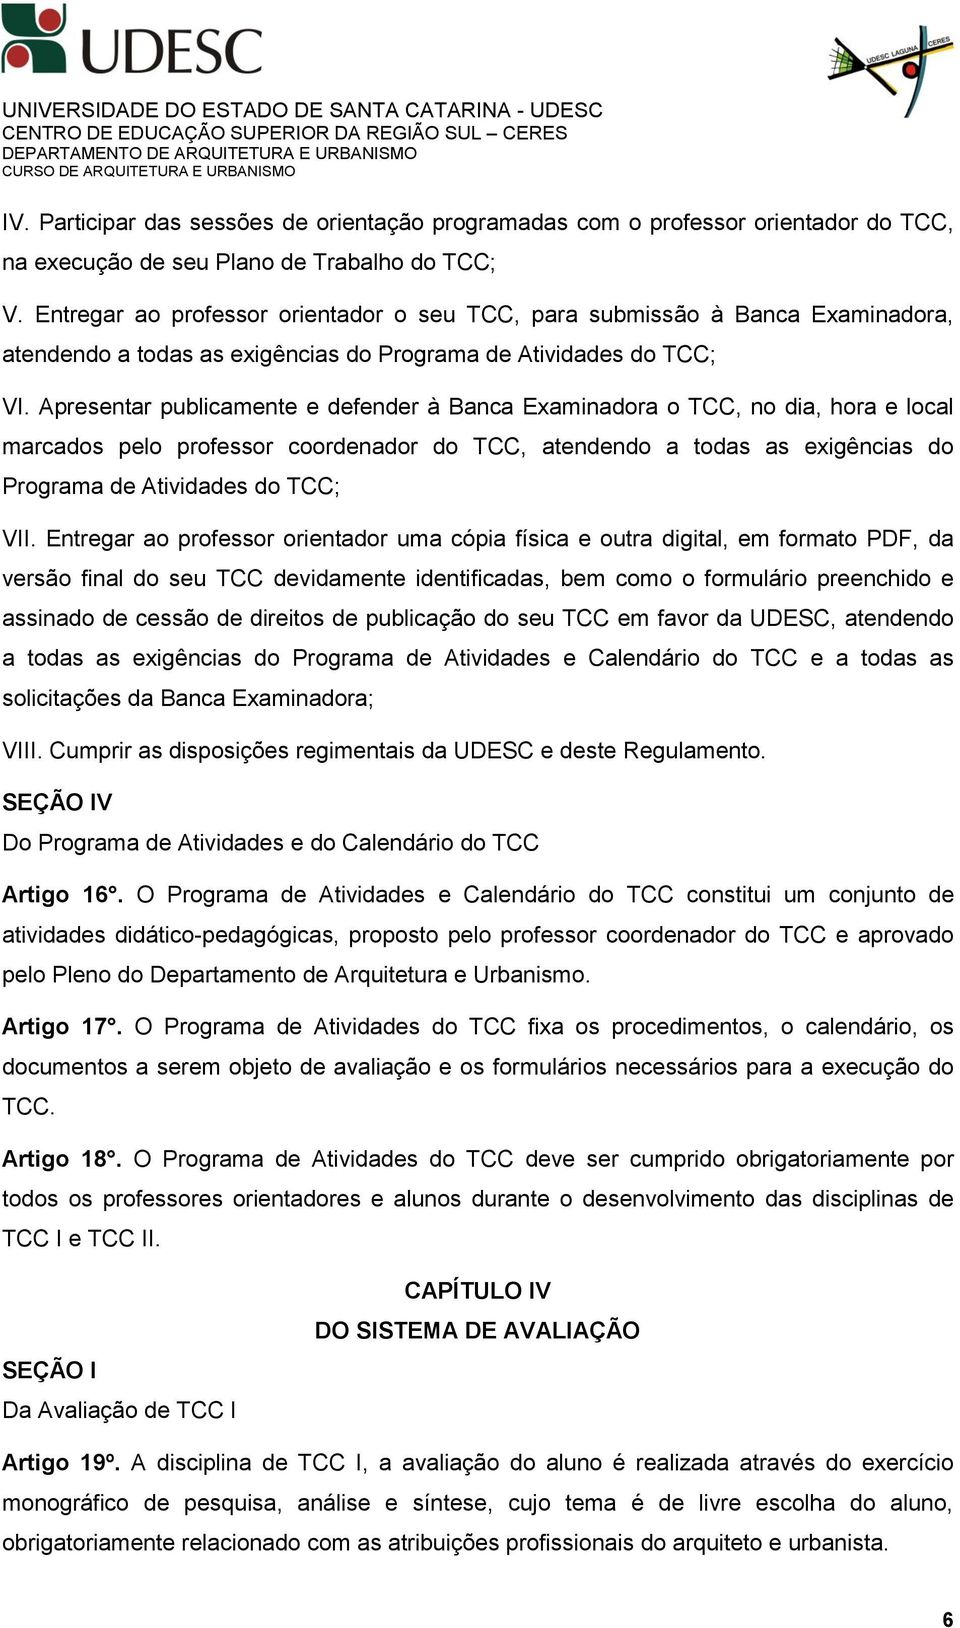 Apresentar publicamente e defender à Banca Examinadora o TCC, no dia, hora e local marcados pelo professor coordenador do TCC, atendendo a todas as exigências do Programa de Atividades do TCC; VII.